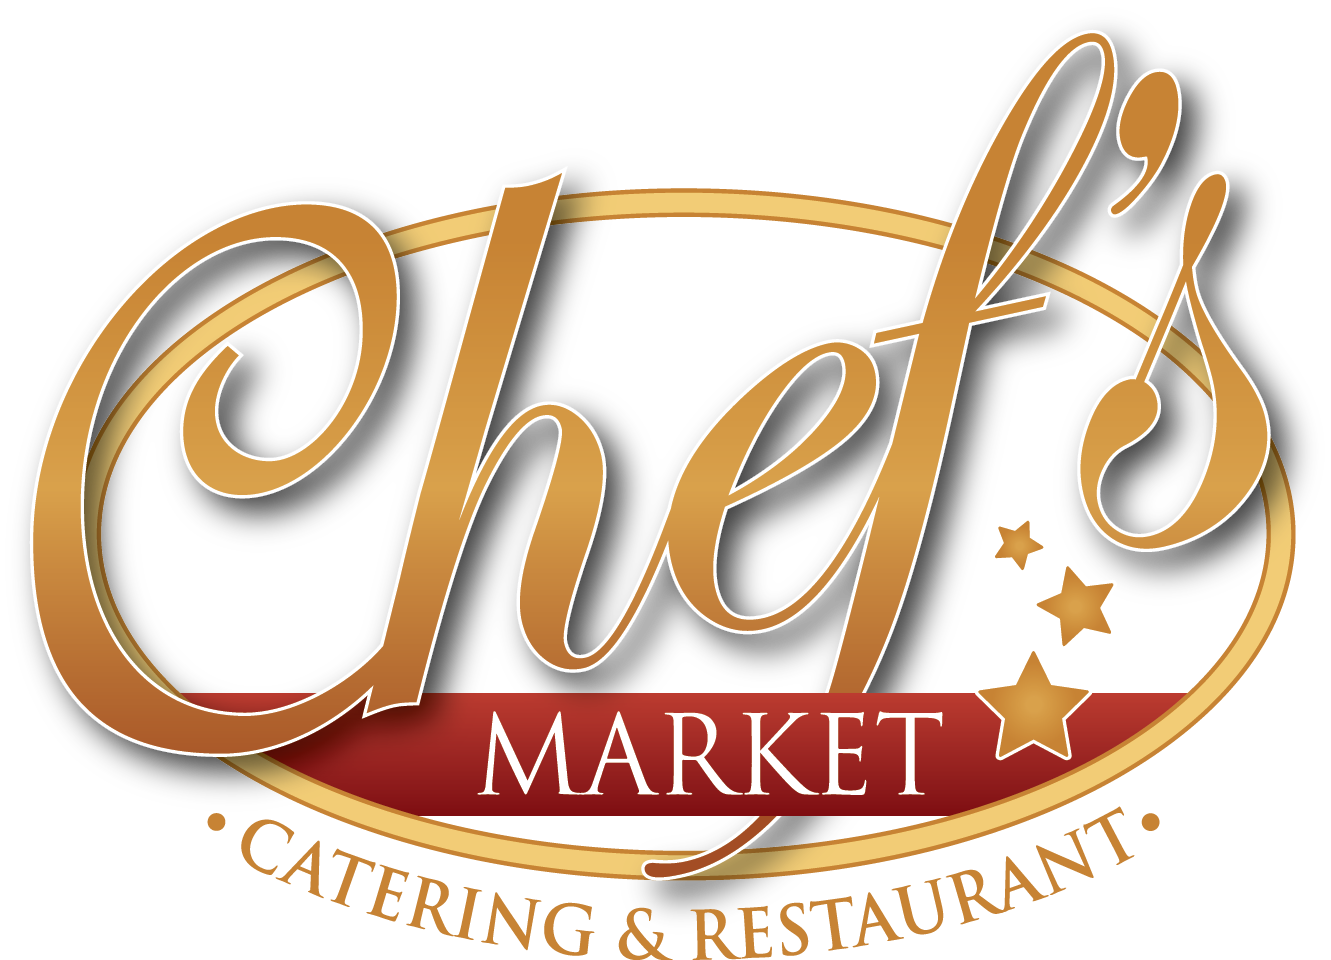 ChefsMarket Logo_Lt.png